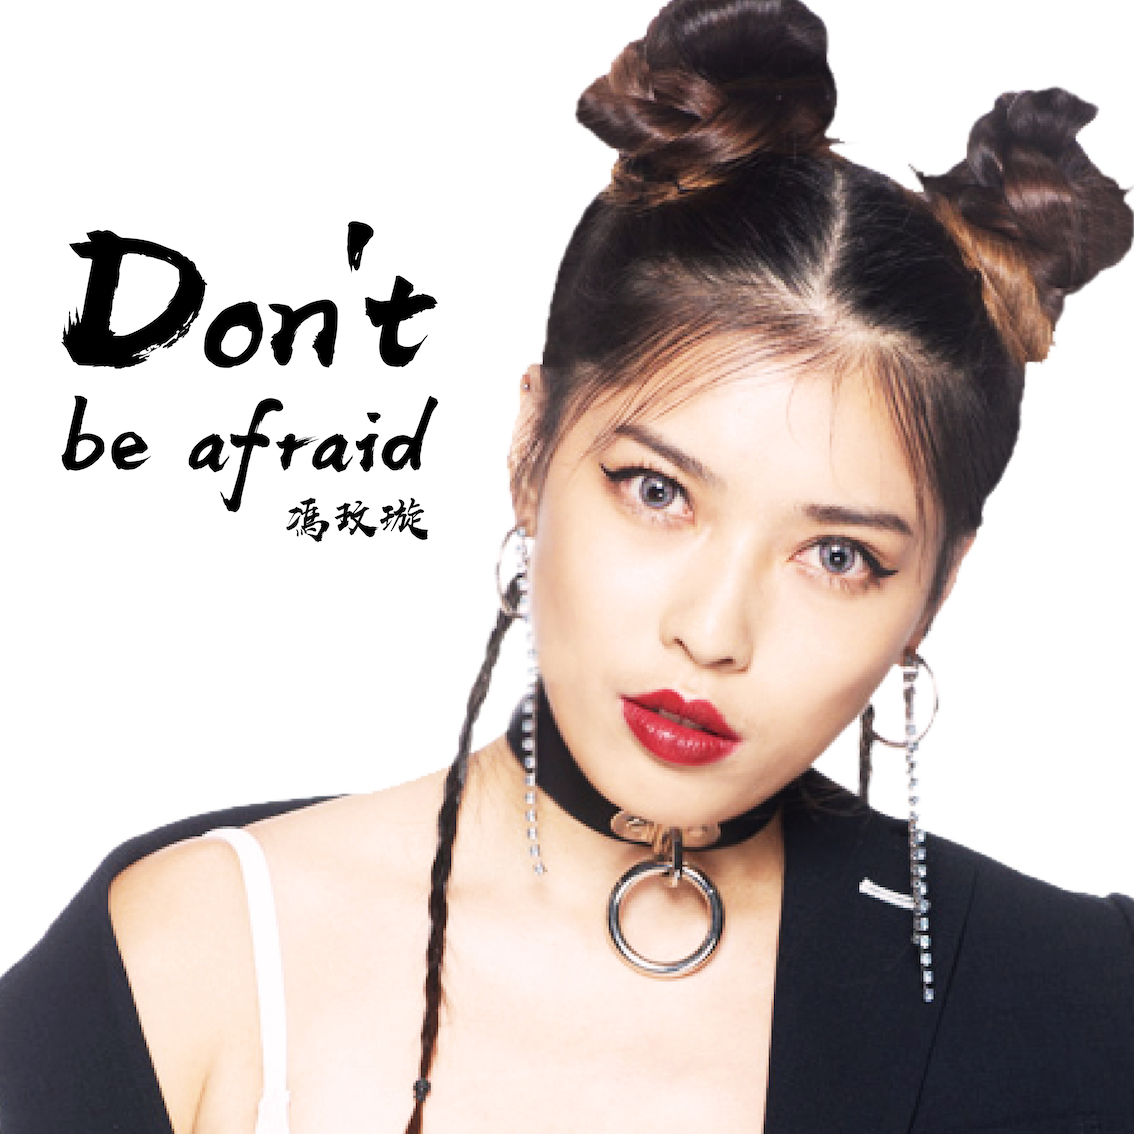 冯玟璇：Don't be afraid